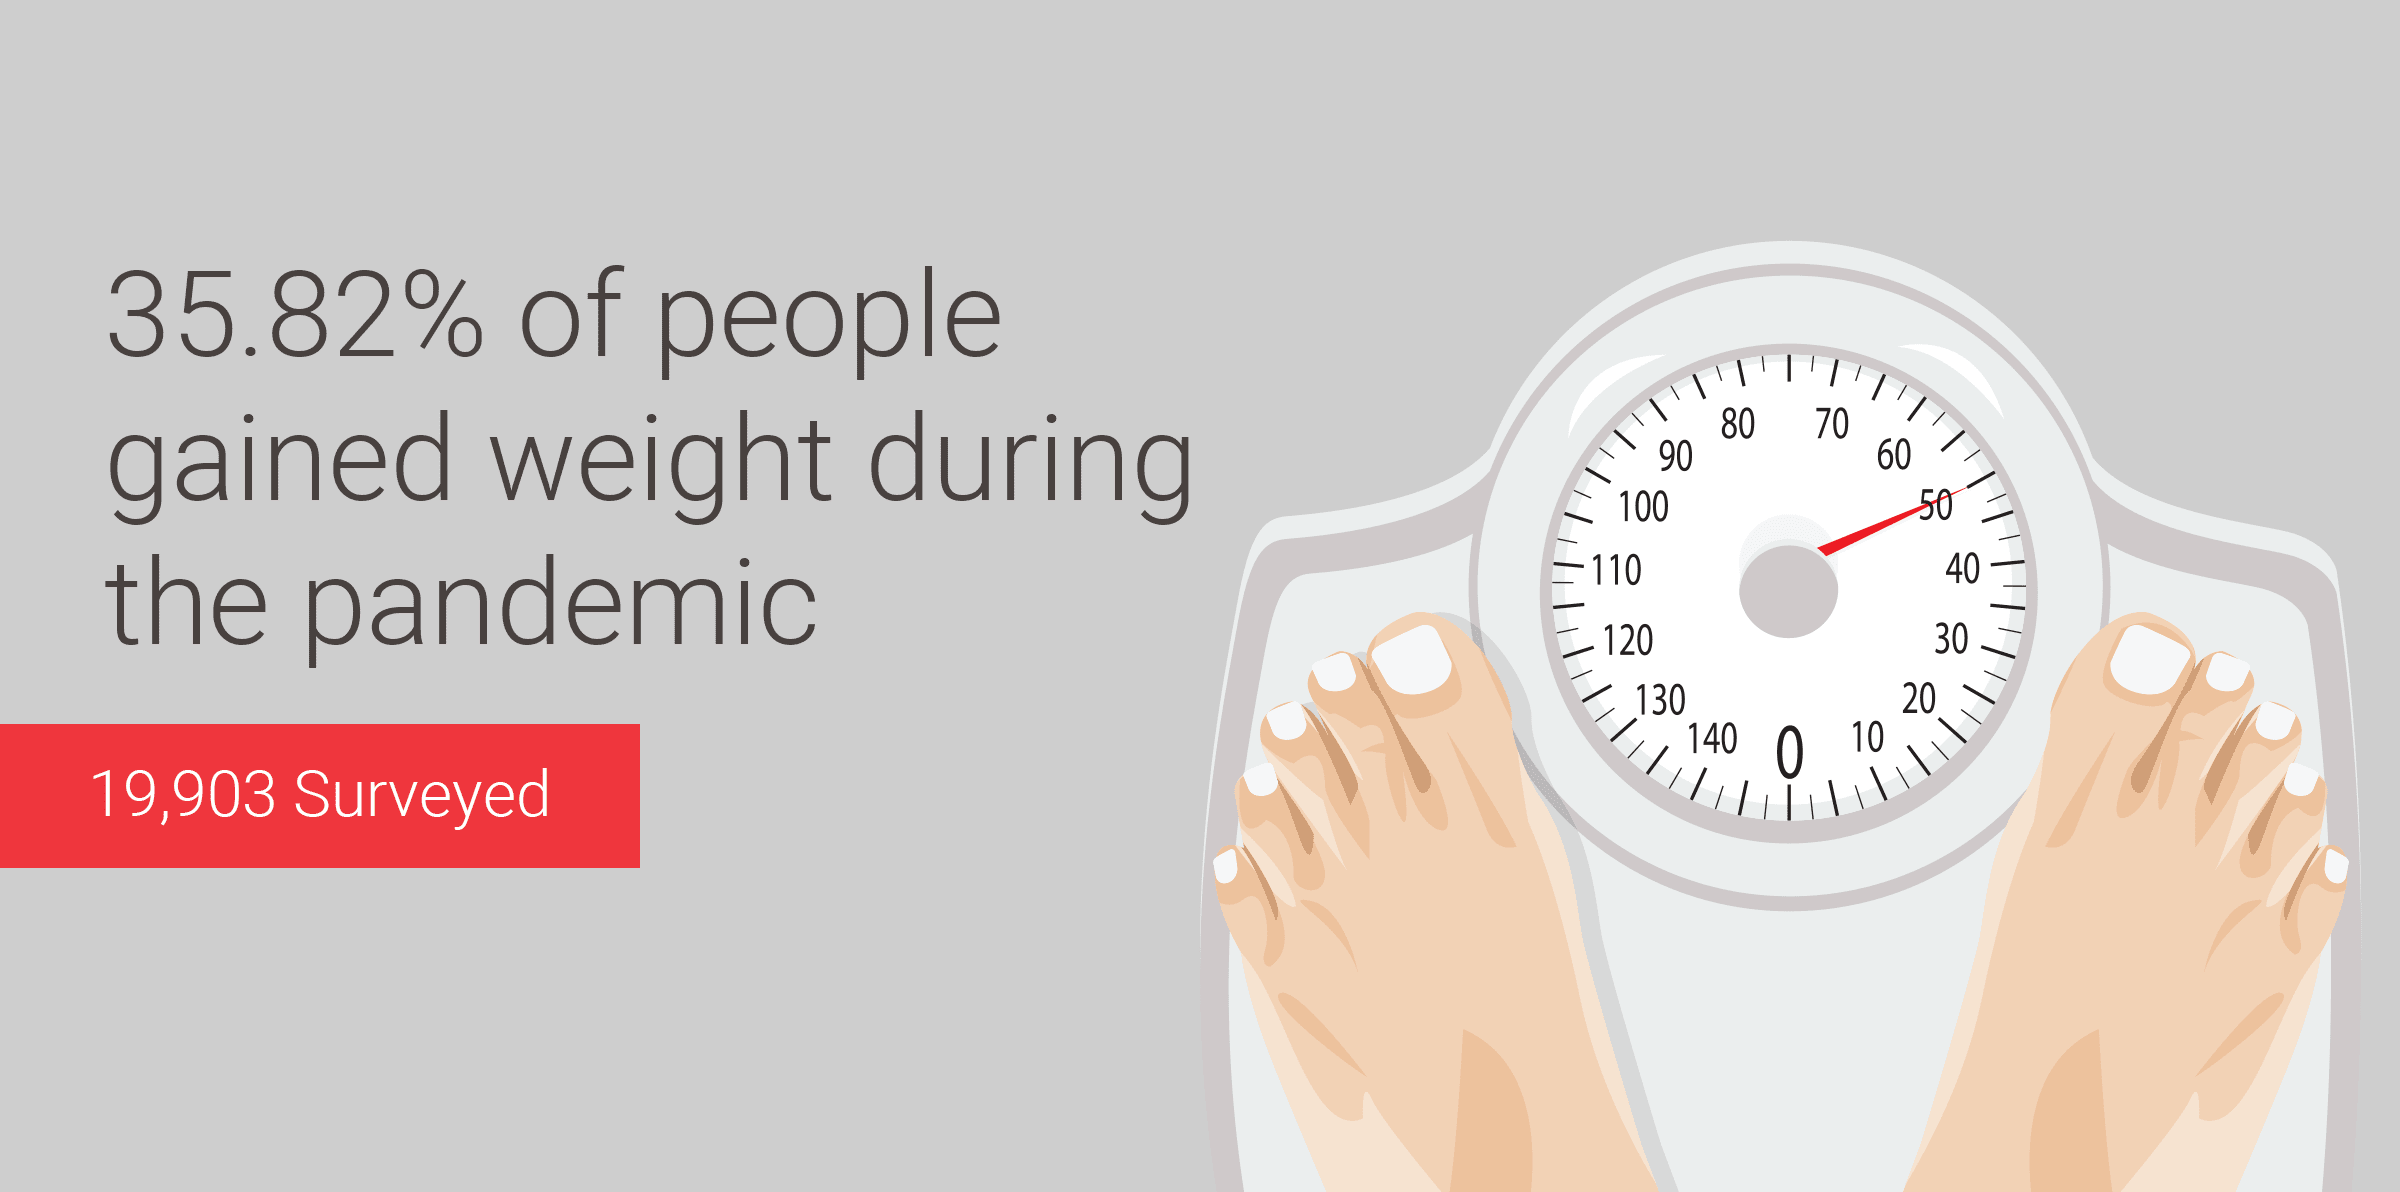 Aumento de peso durante la cuarentena: el 35,82% aumentó de peso durante la pandemia [Estudio con 19.903 personas]